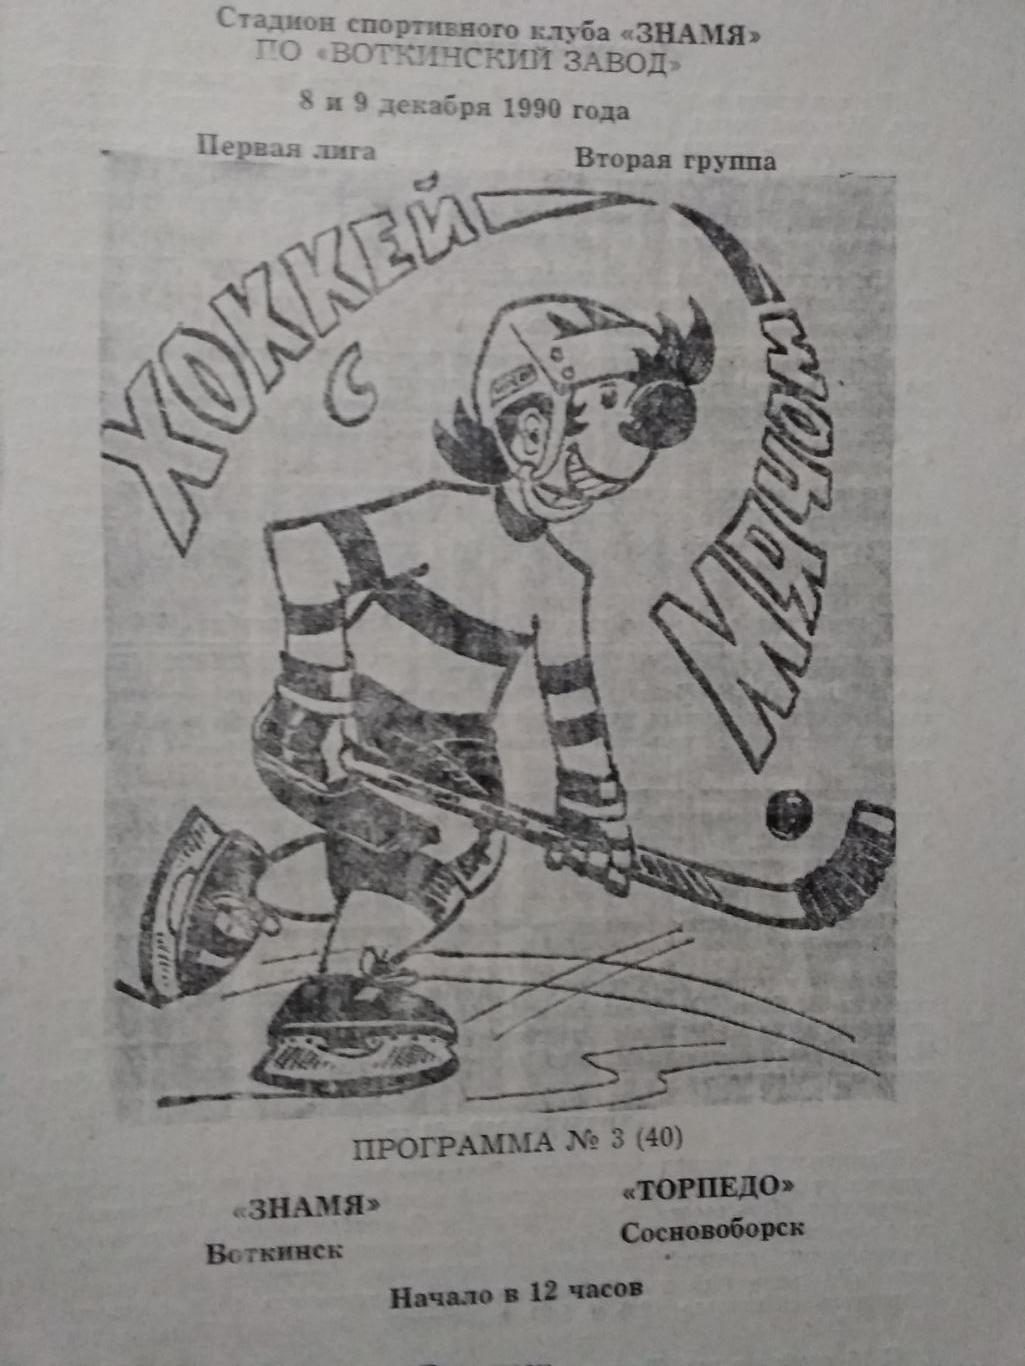 Знамя (Воткинск) - Торпедо (Сосновоборск). 8-9 декабря 1990.